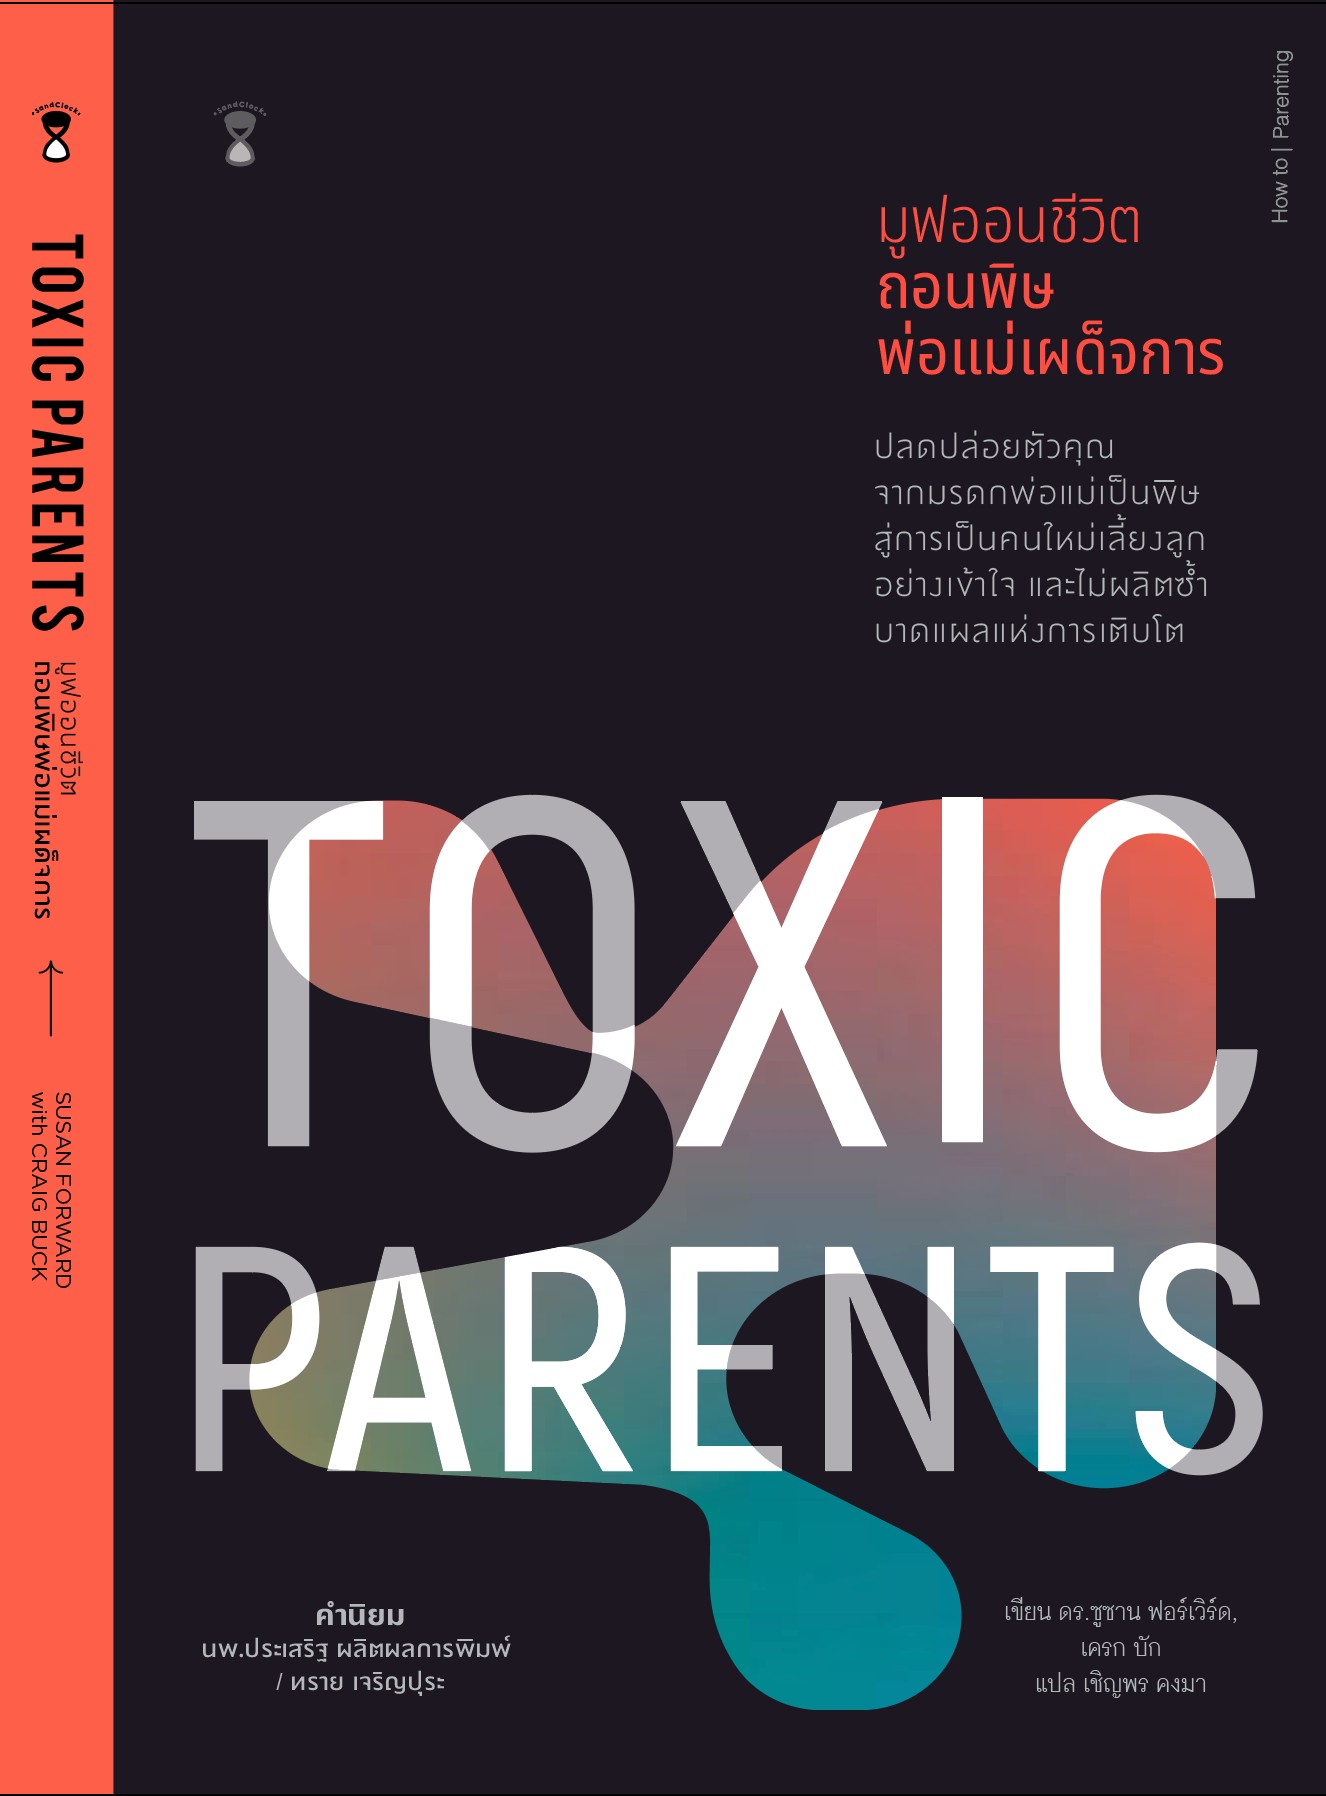 Toxic Parents มูฟออนชีวิต ถอนพิษพ่อแม่เผด็จการ / ดร.ซูซาน ฟอร์เวิร์ด, เครก บัก / แปล เชิญพร คงมา